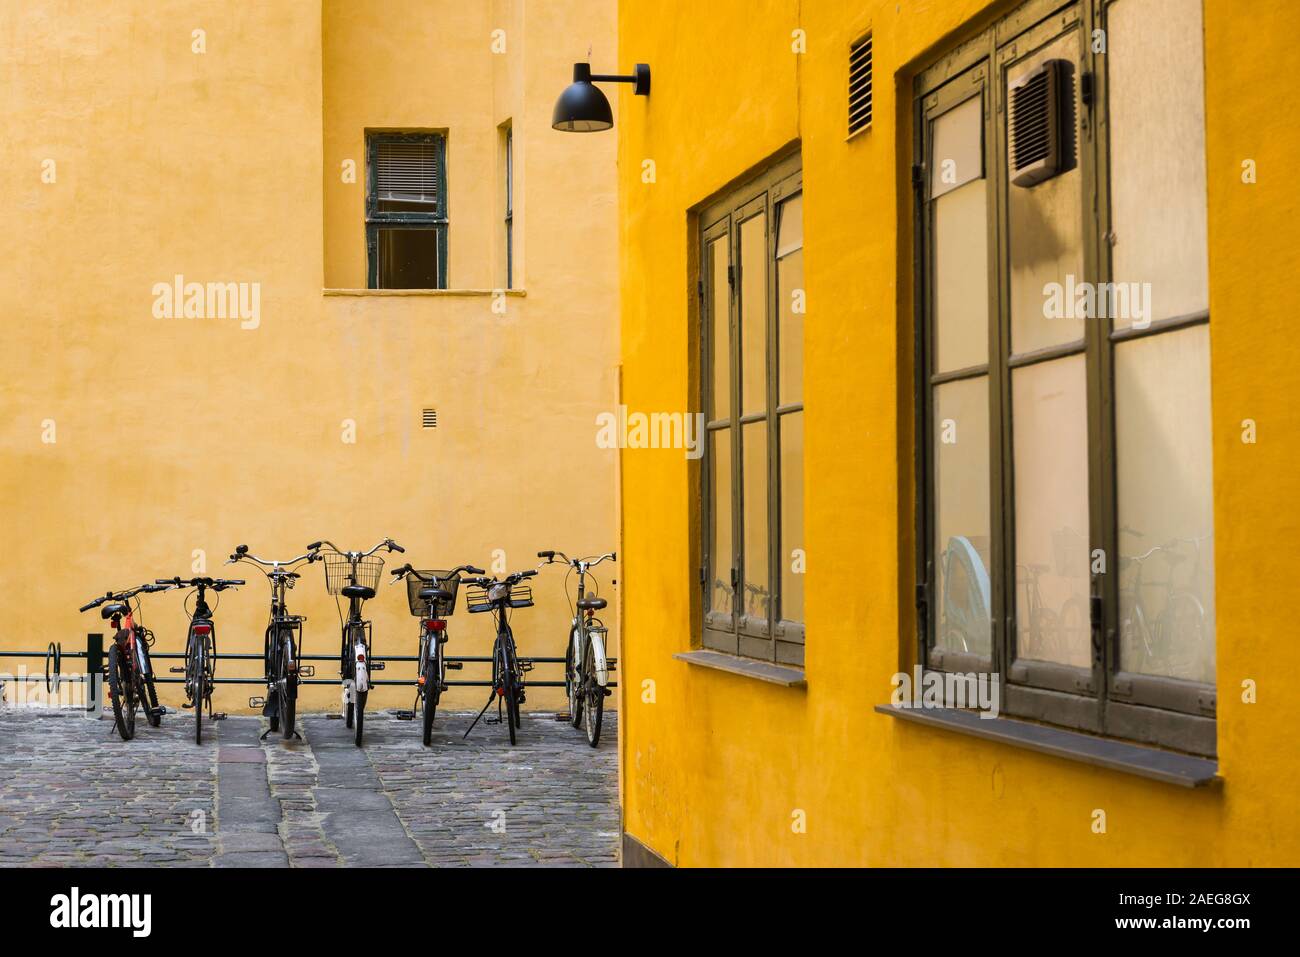 Location de Copenhague, vue de bicyclettes garées dans une rue pavée de la vieille ville Quartier Latin, au centre de Copenhague, au Danemark. Banque D'Images